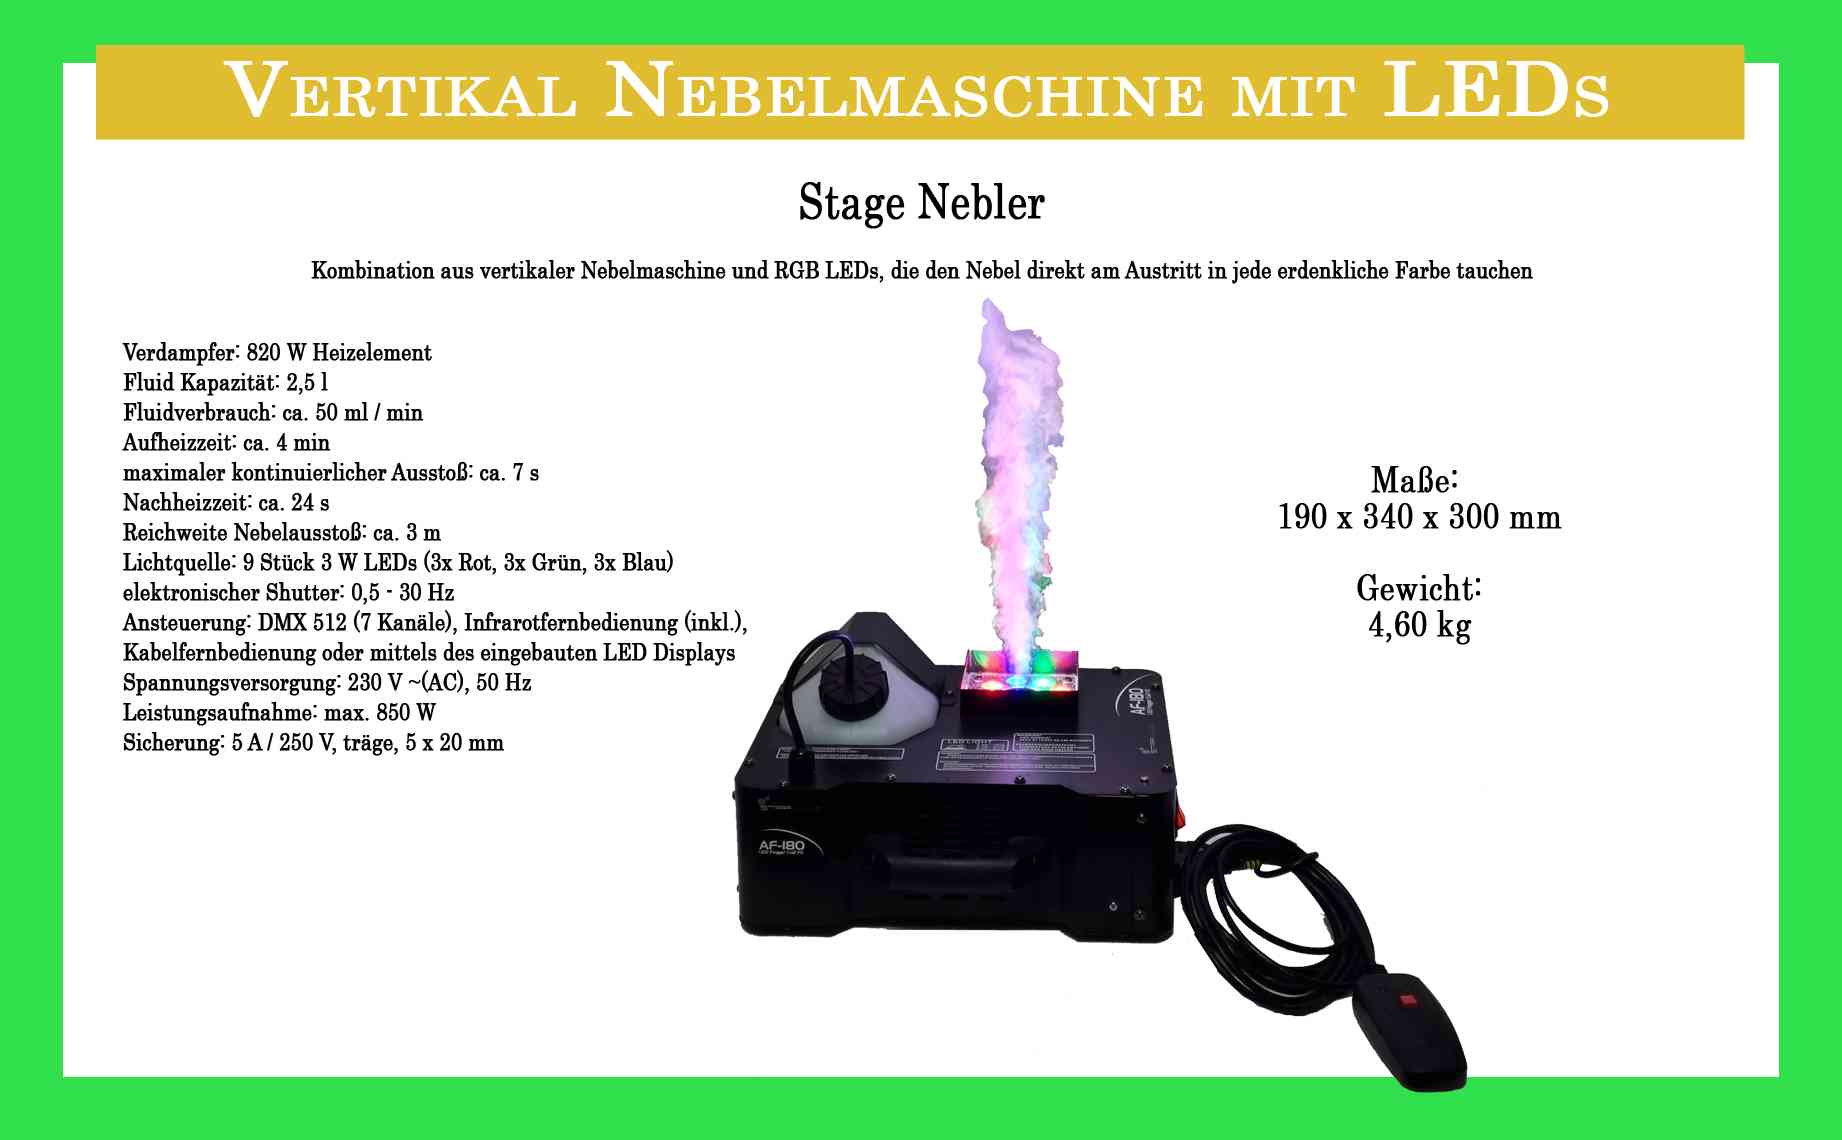 Vertikale Nebelmaschine - Stage Nebler